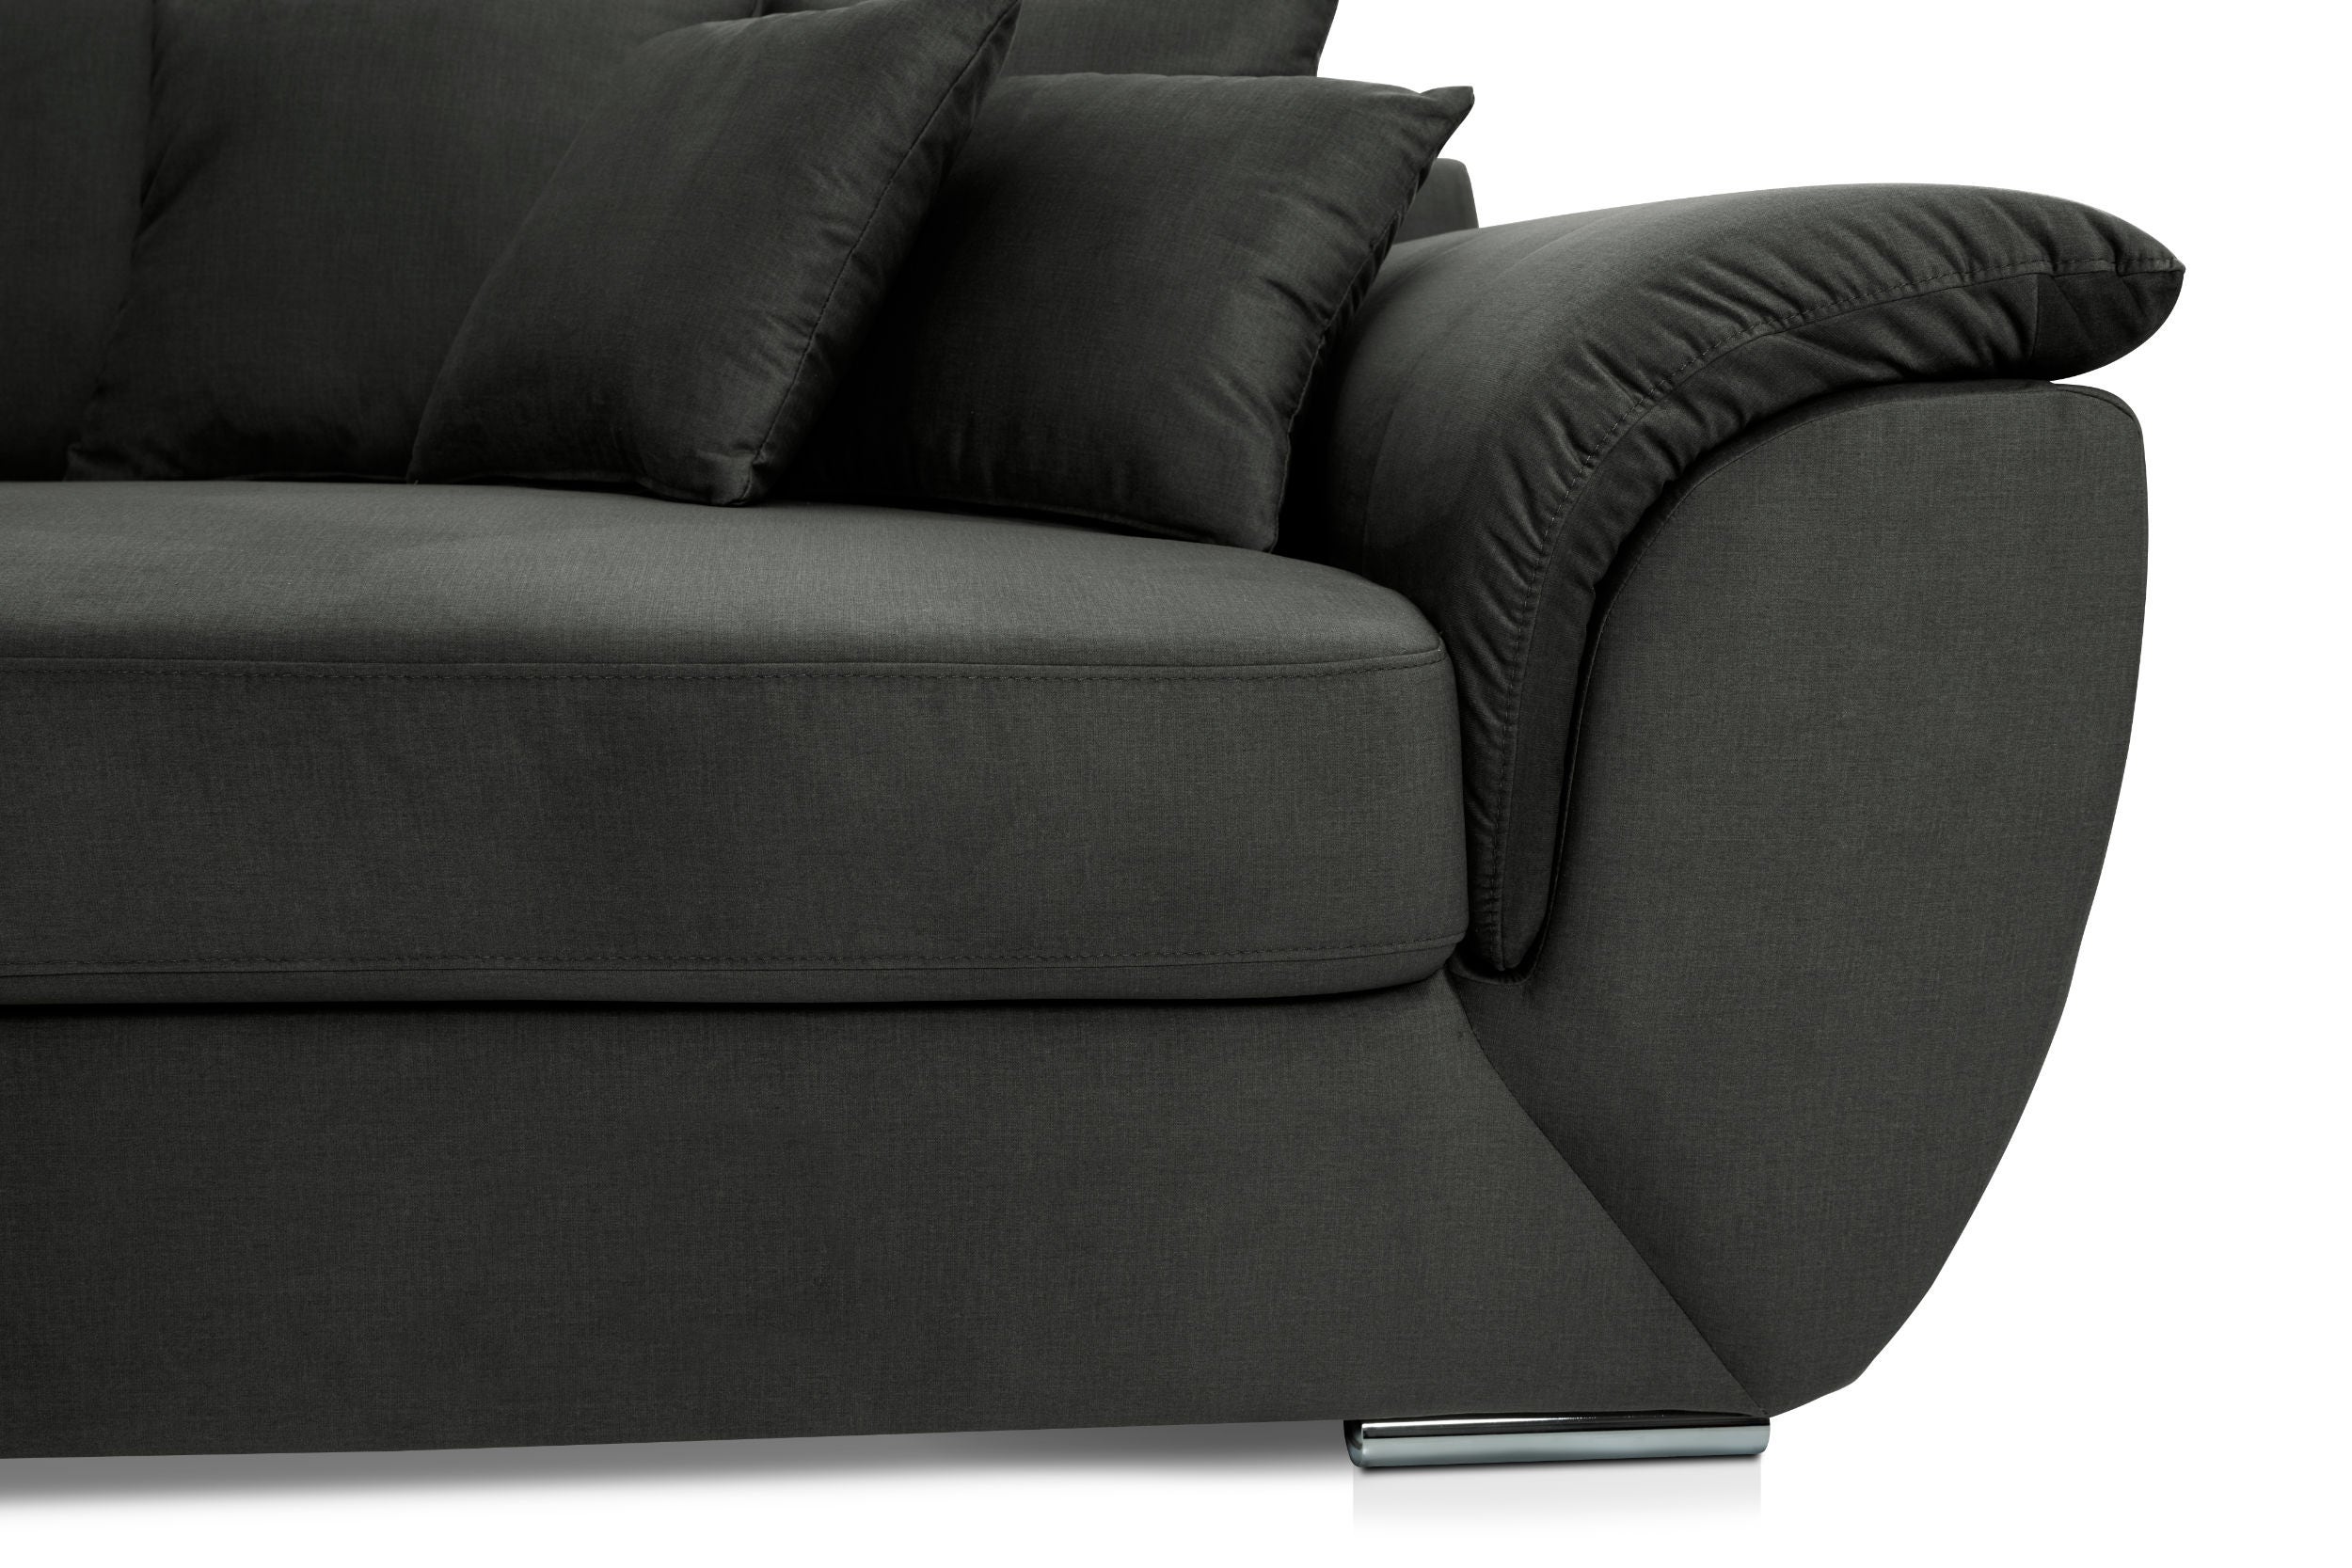 Canapea fixa 3 locuri MM608, gri inchis, 270 x 130 x 93 cm, 2C